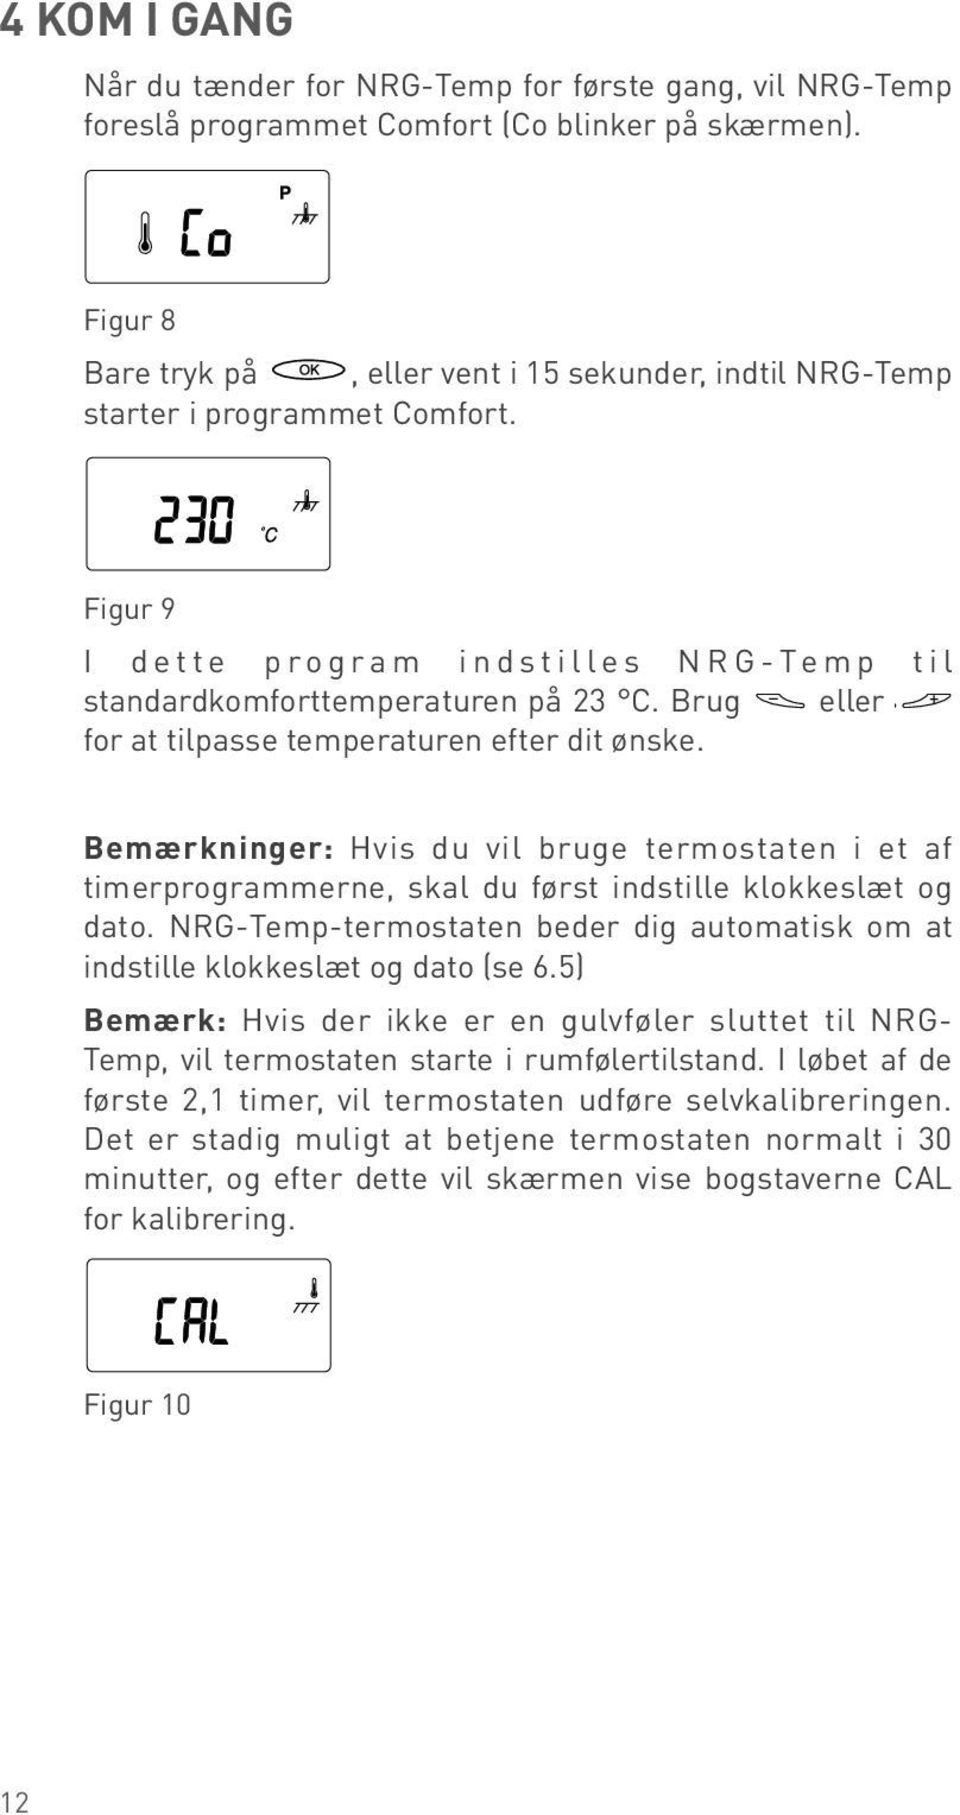 0h 2 5 8 2 2 5 8 2 Figur dette program indstilles NG-Temp til 0h standardkomforttemperaturen 2 5 8 2 på 2.